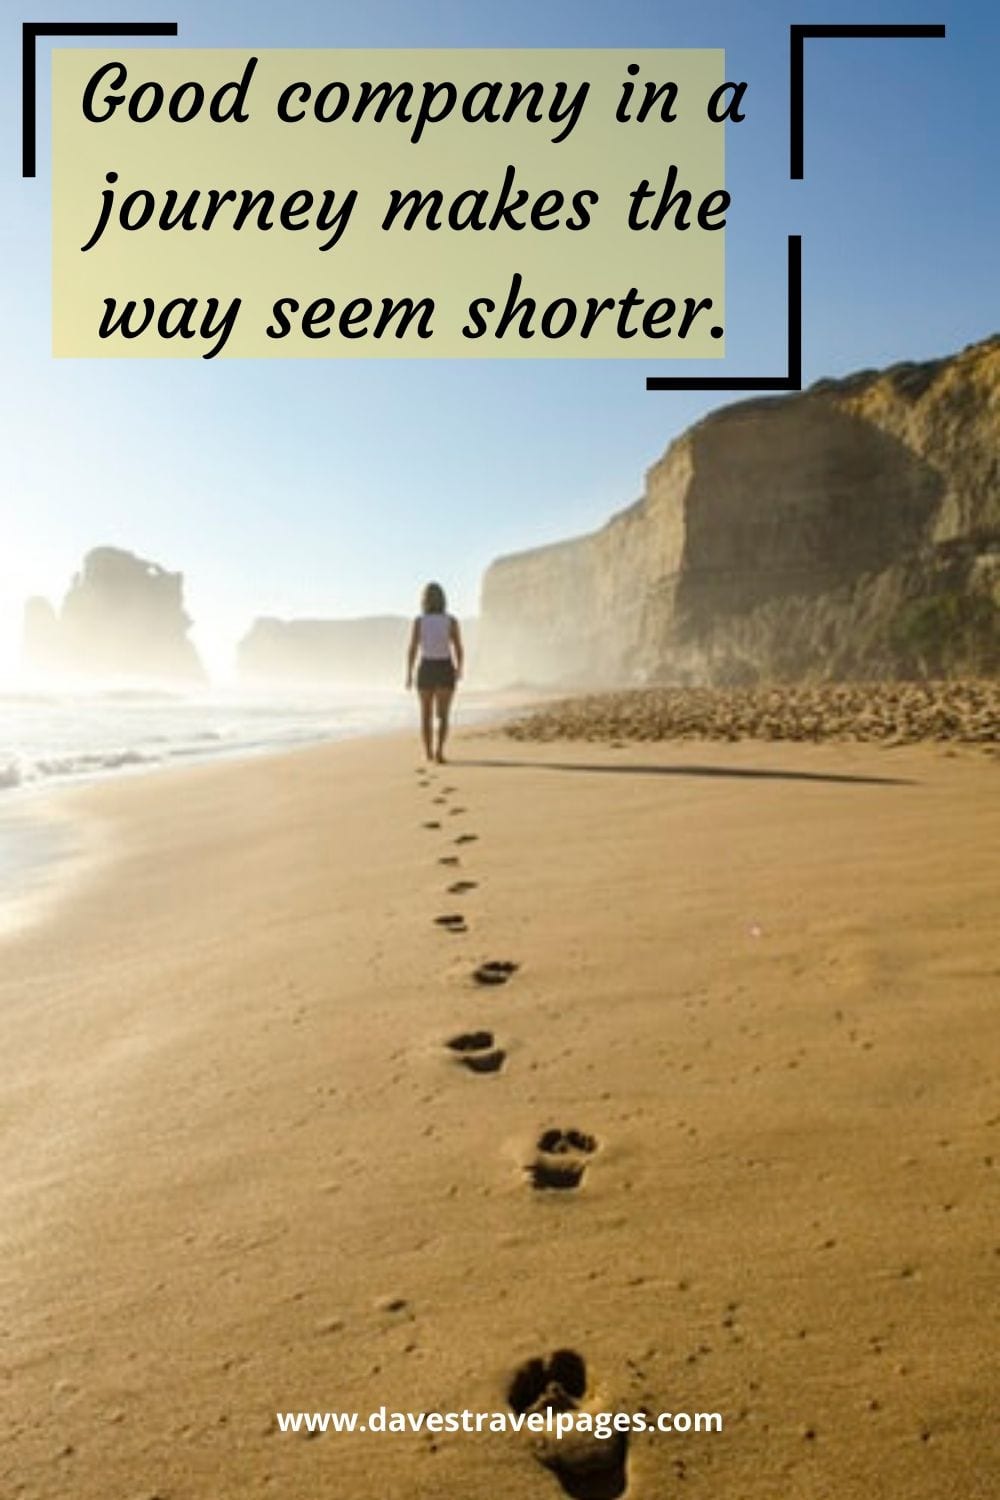 “Good company in a journey makes the way seem shorter.” -Izaak Walton